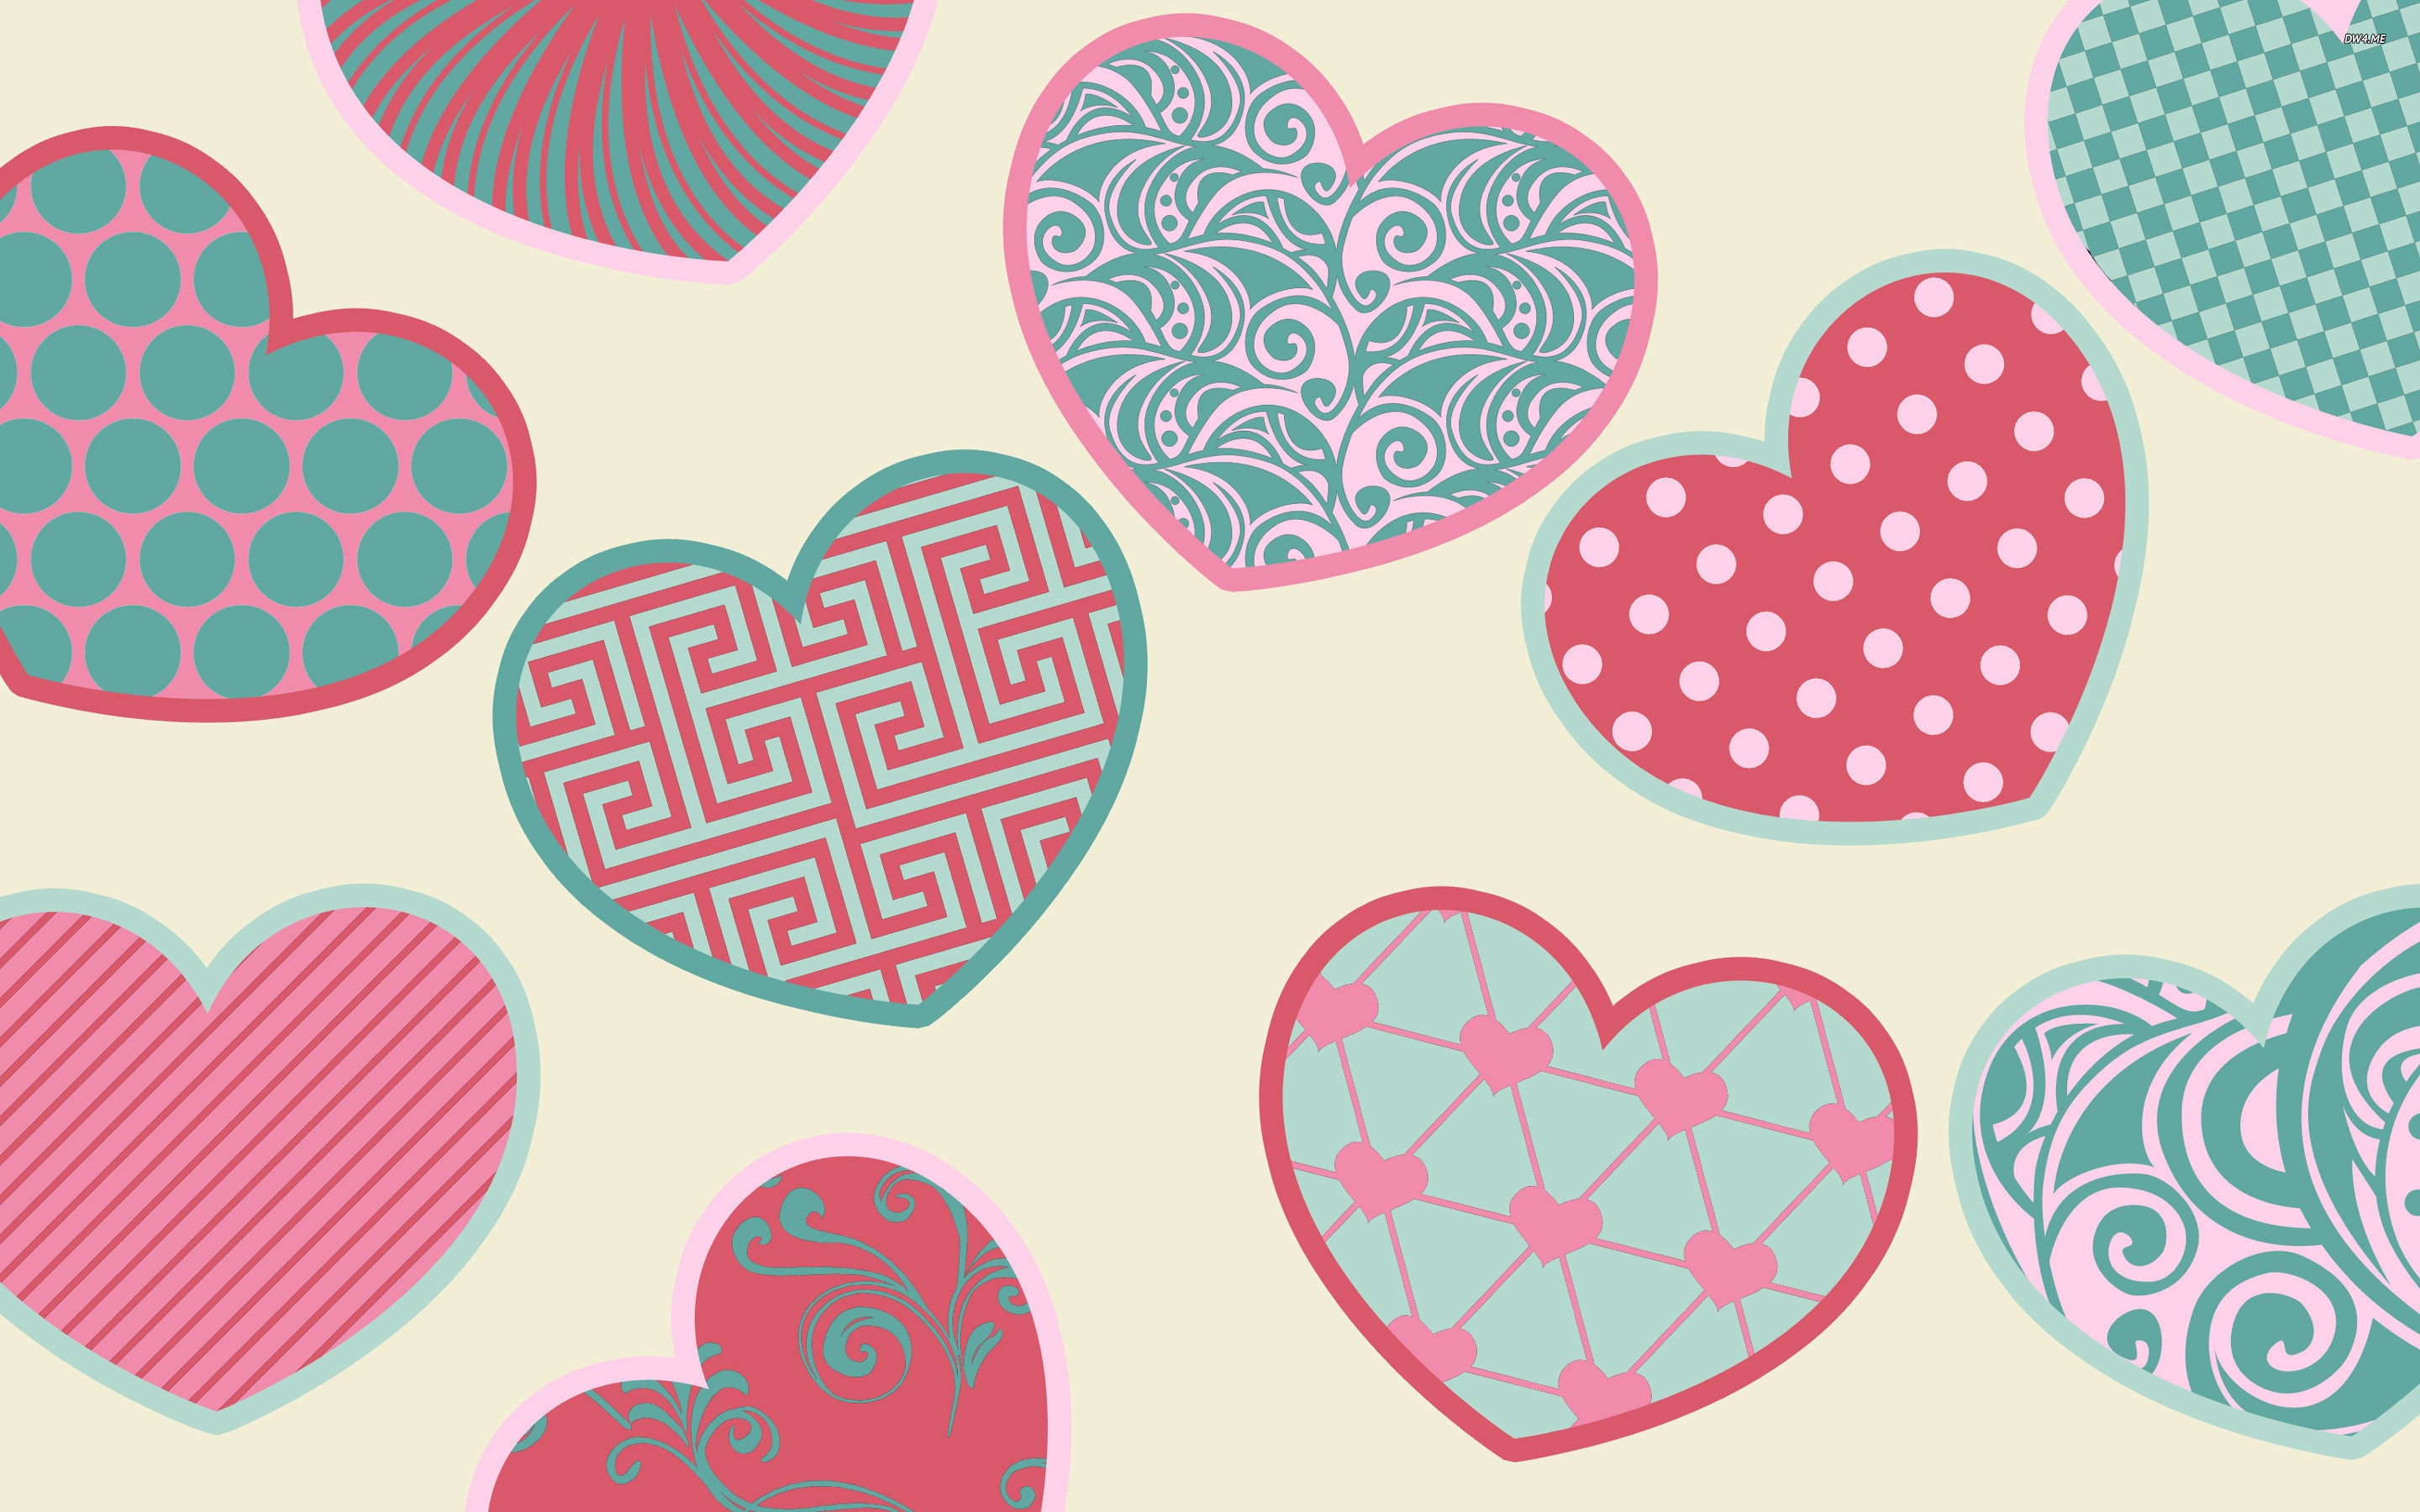 2880x1800 Colorful hearts Holiday desktop wallpaper, Heart wallpaper, Valentine's Day  wallpaper, Love wallpaper - Holidays no.